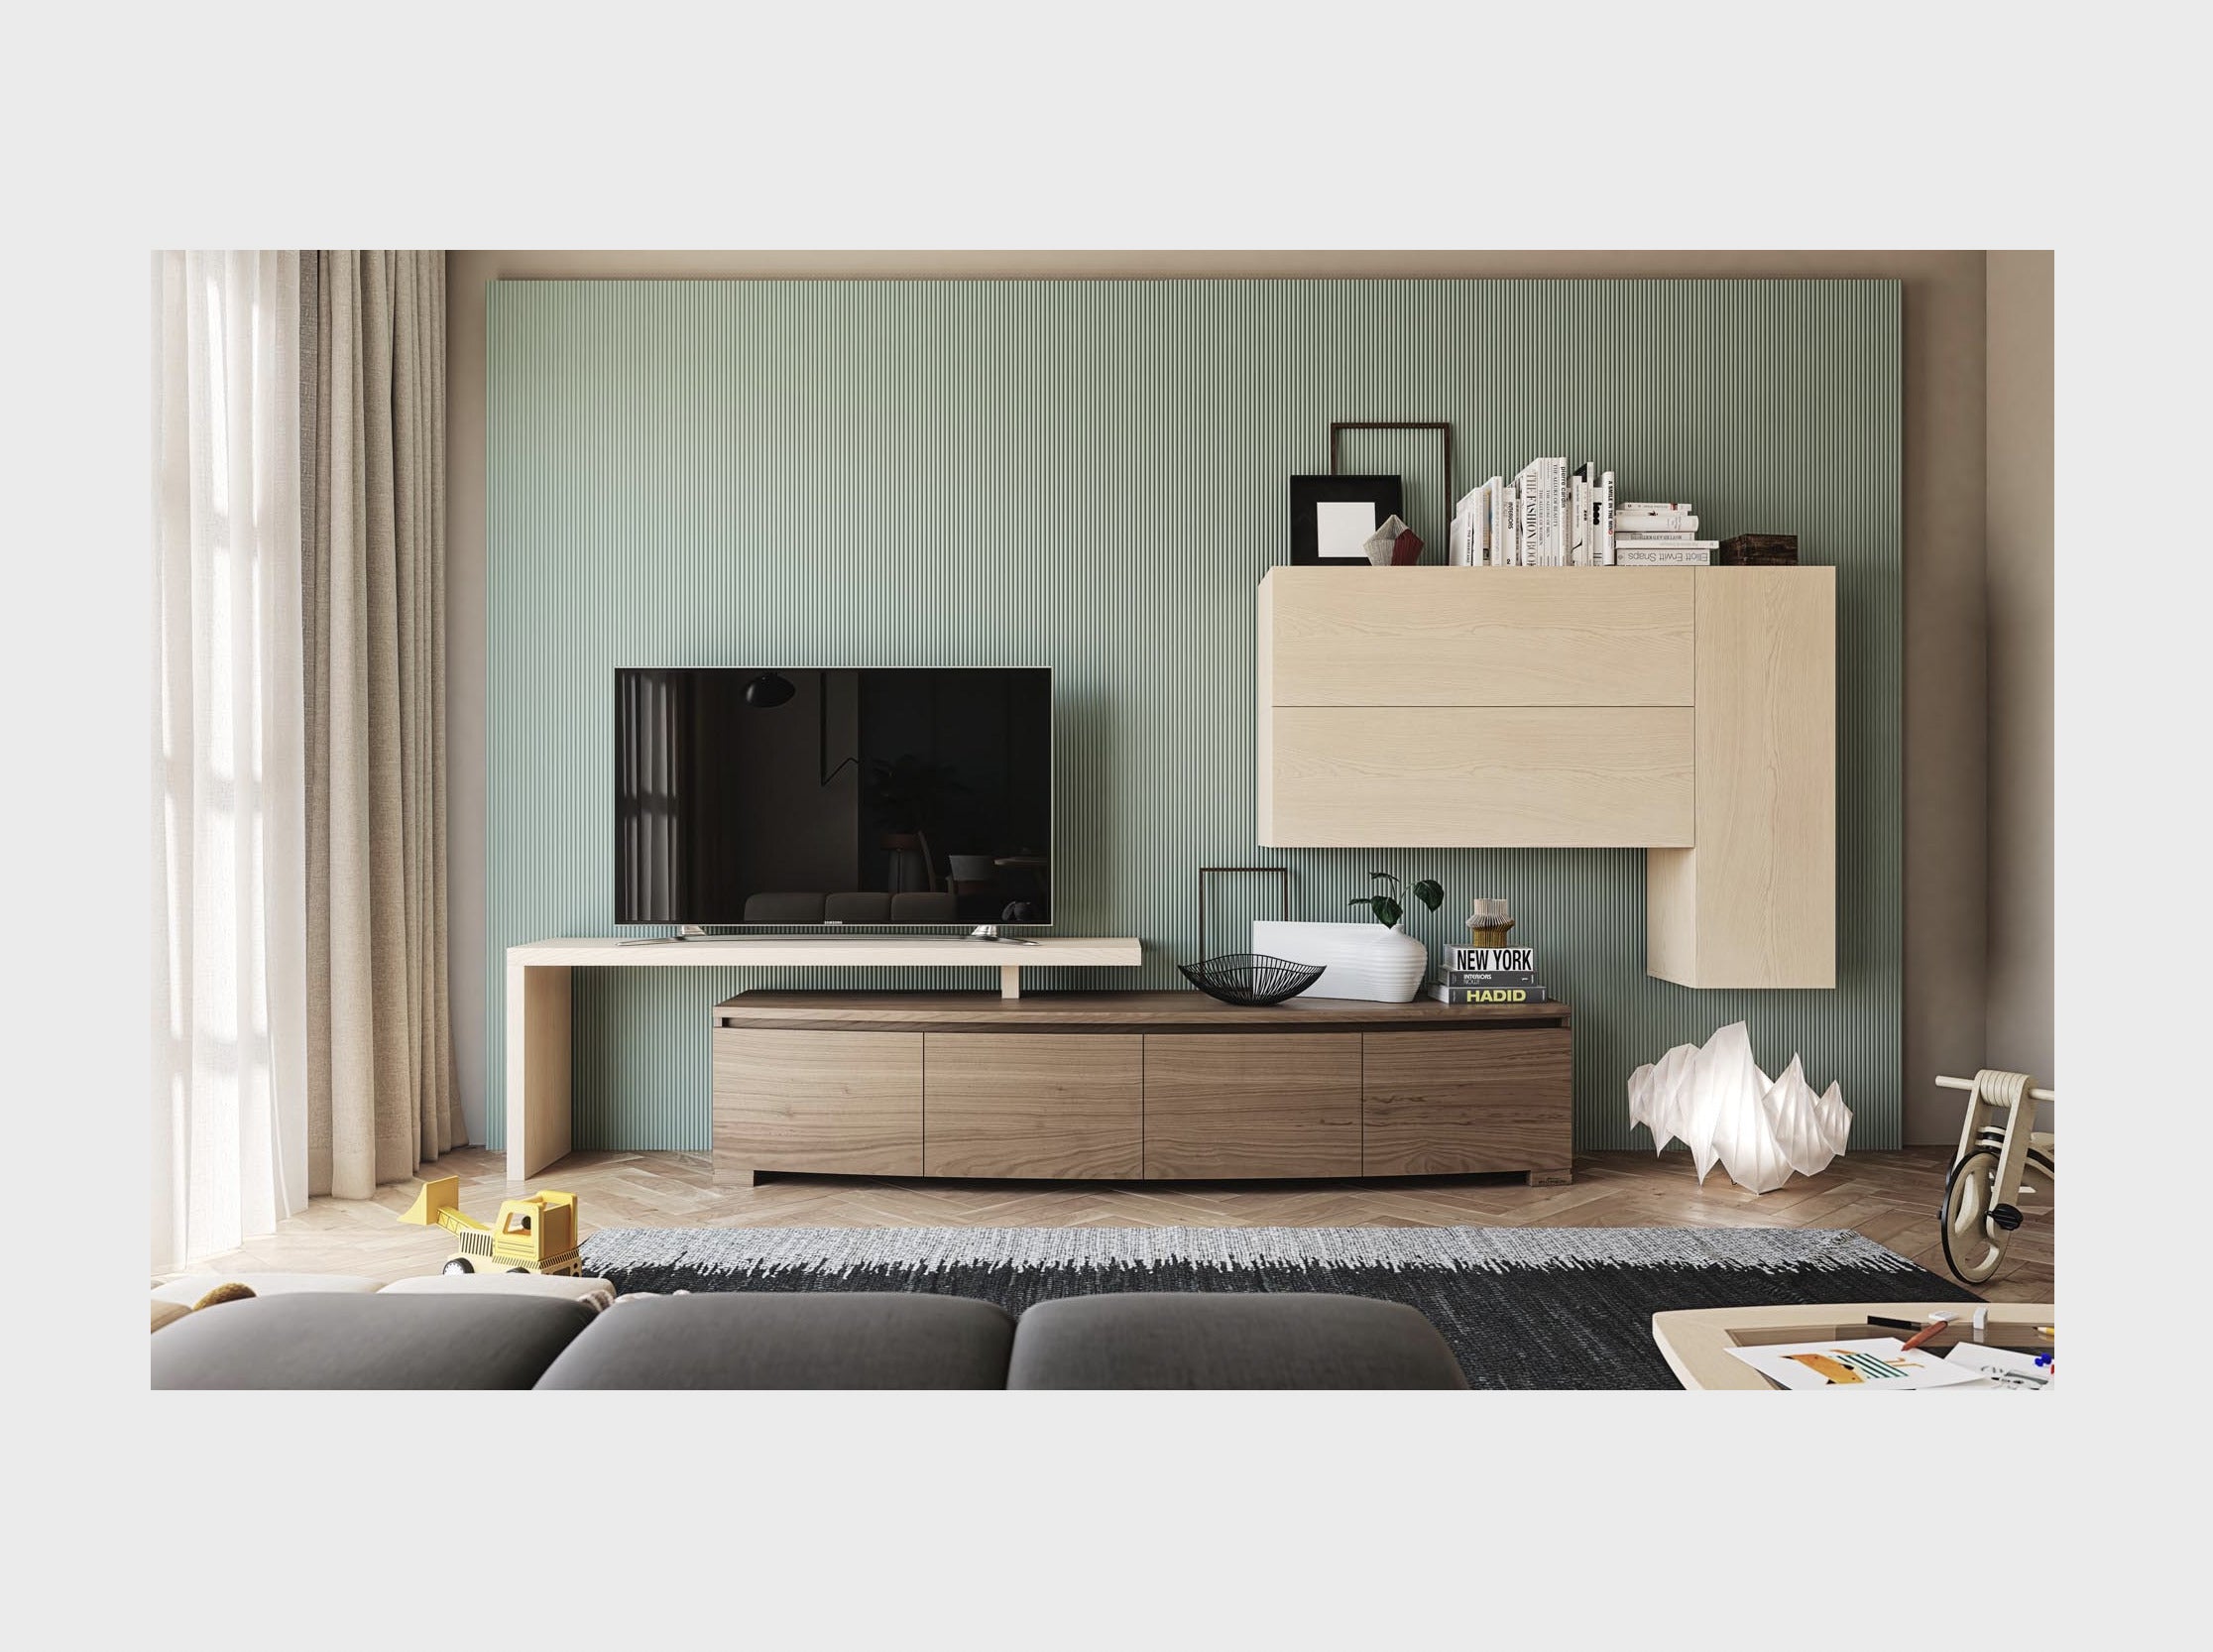 Parete mobile soggiorno moderno in legno collezione Modigliani Piombini Mobili Italiani comp13